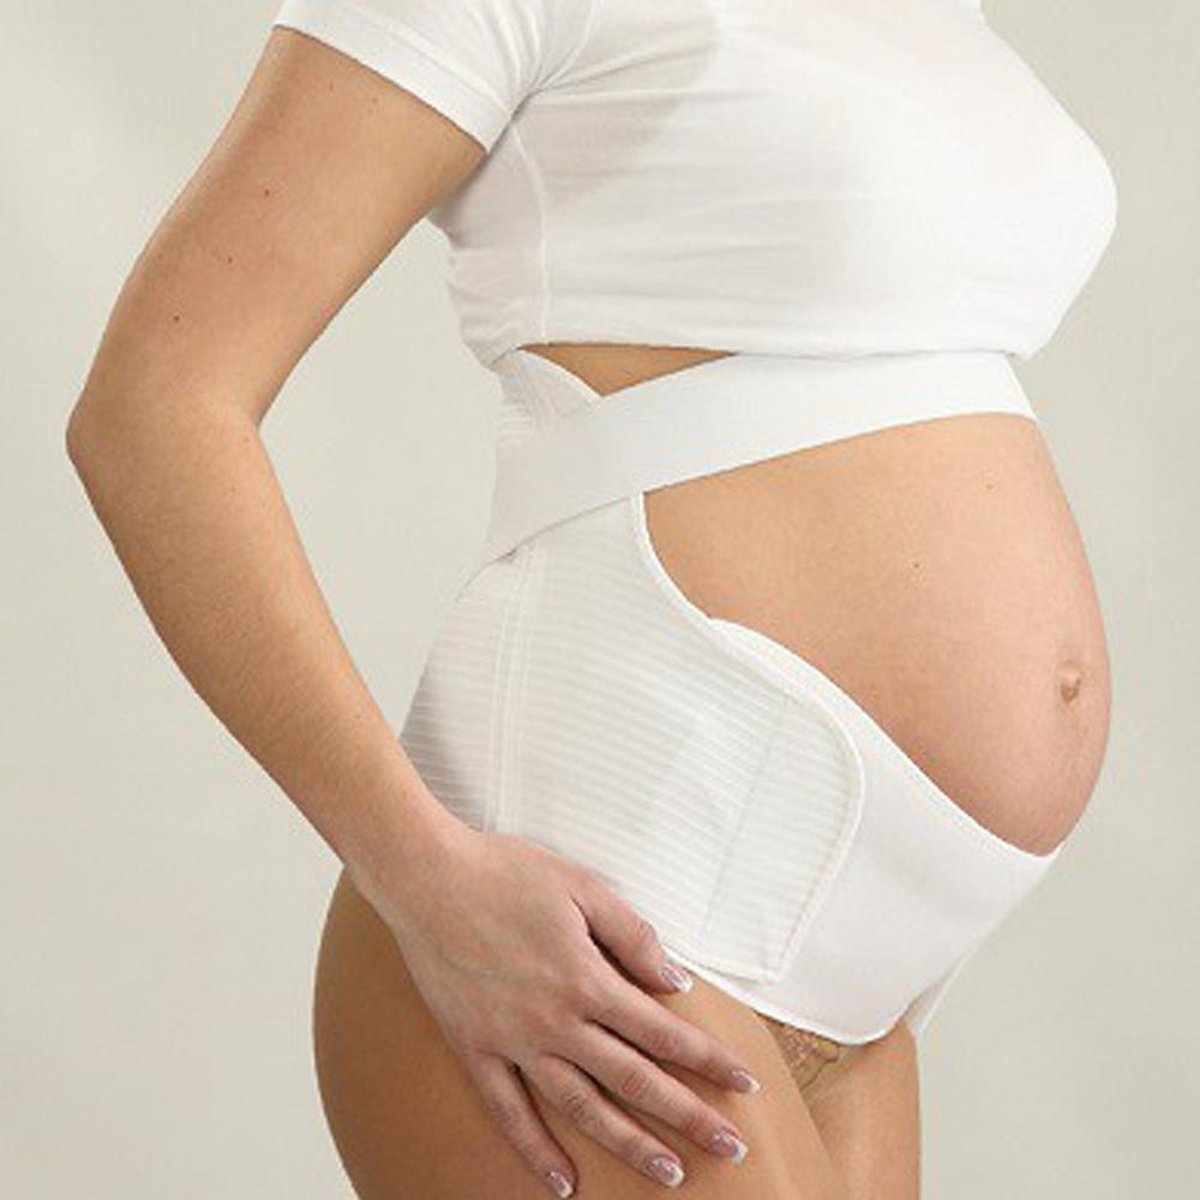 Bekkenbrace Zwangerschap Steunband - Verstelbaar Buikband - Zwangerschapsband - Bekkenbrace Bekkenband - verhoogd comfortniveau BEIGE -S - MADE IN EU